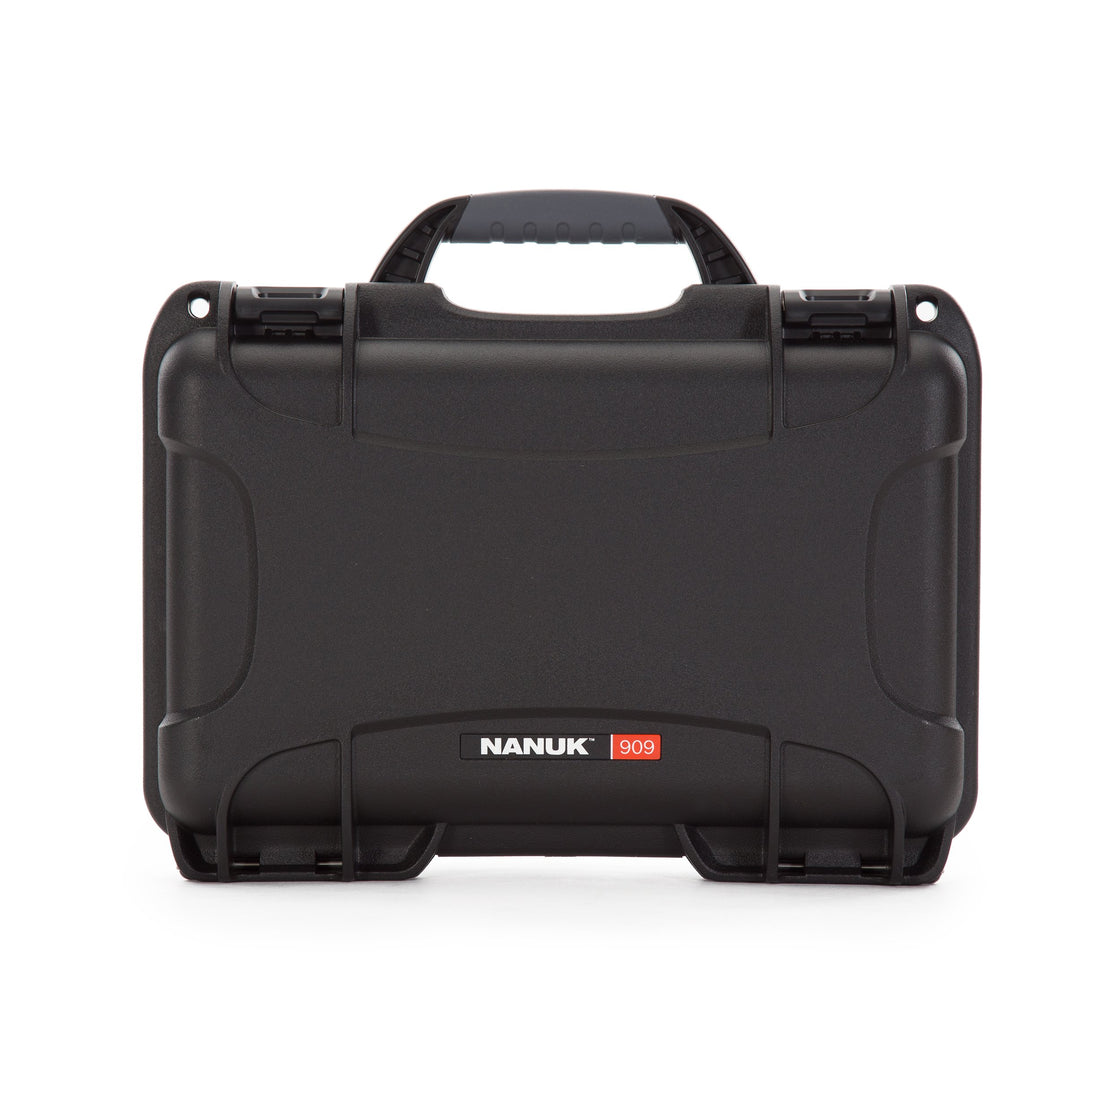 nanuk 905 waterproof hard drone case with custom foam insert for dji spark lime